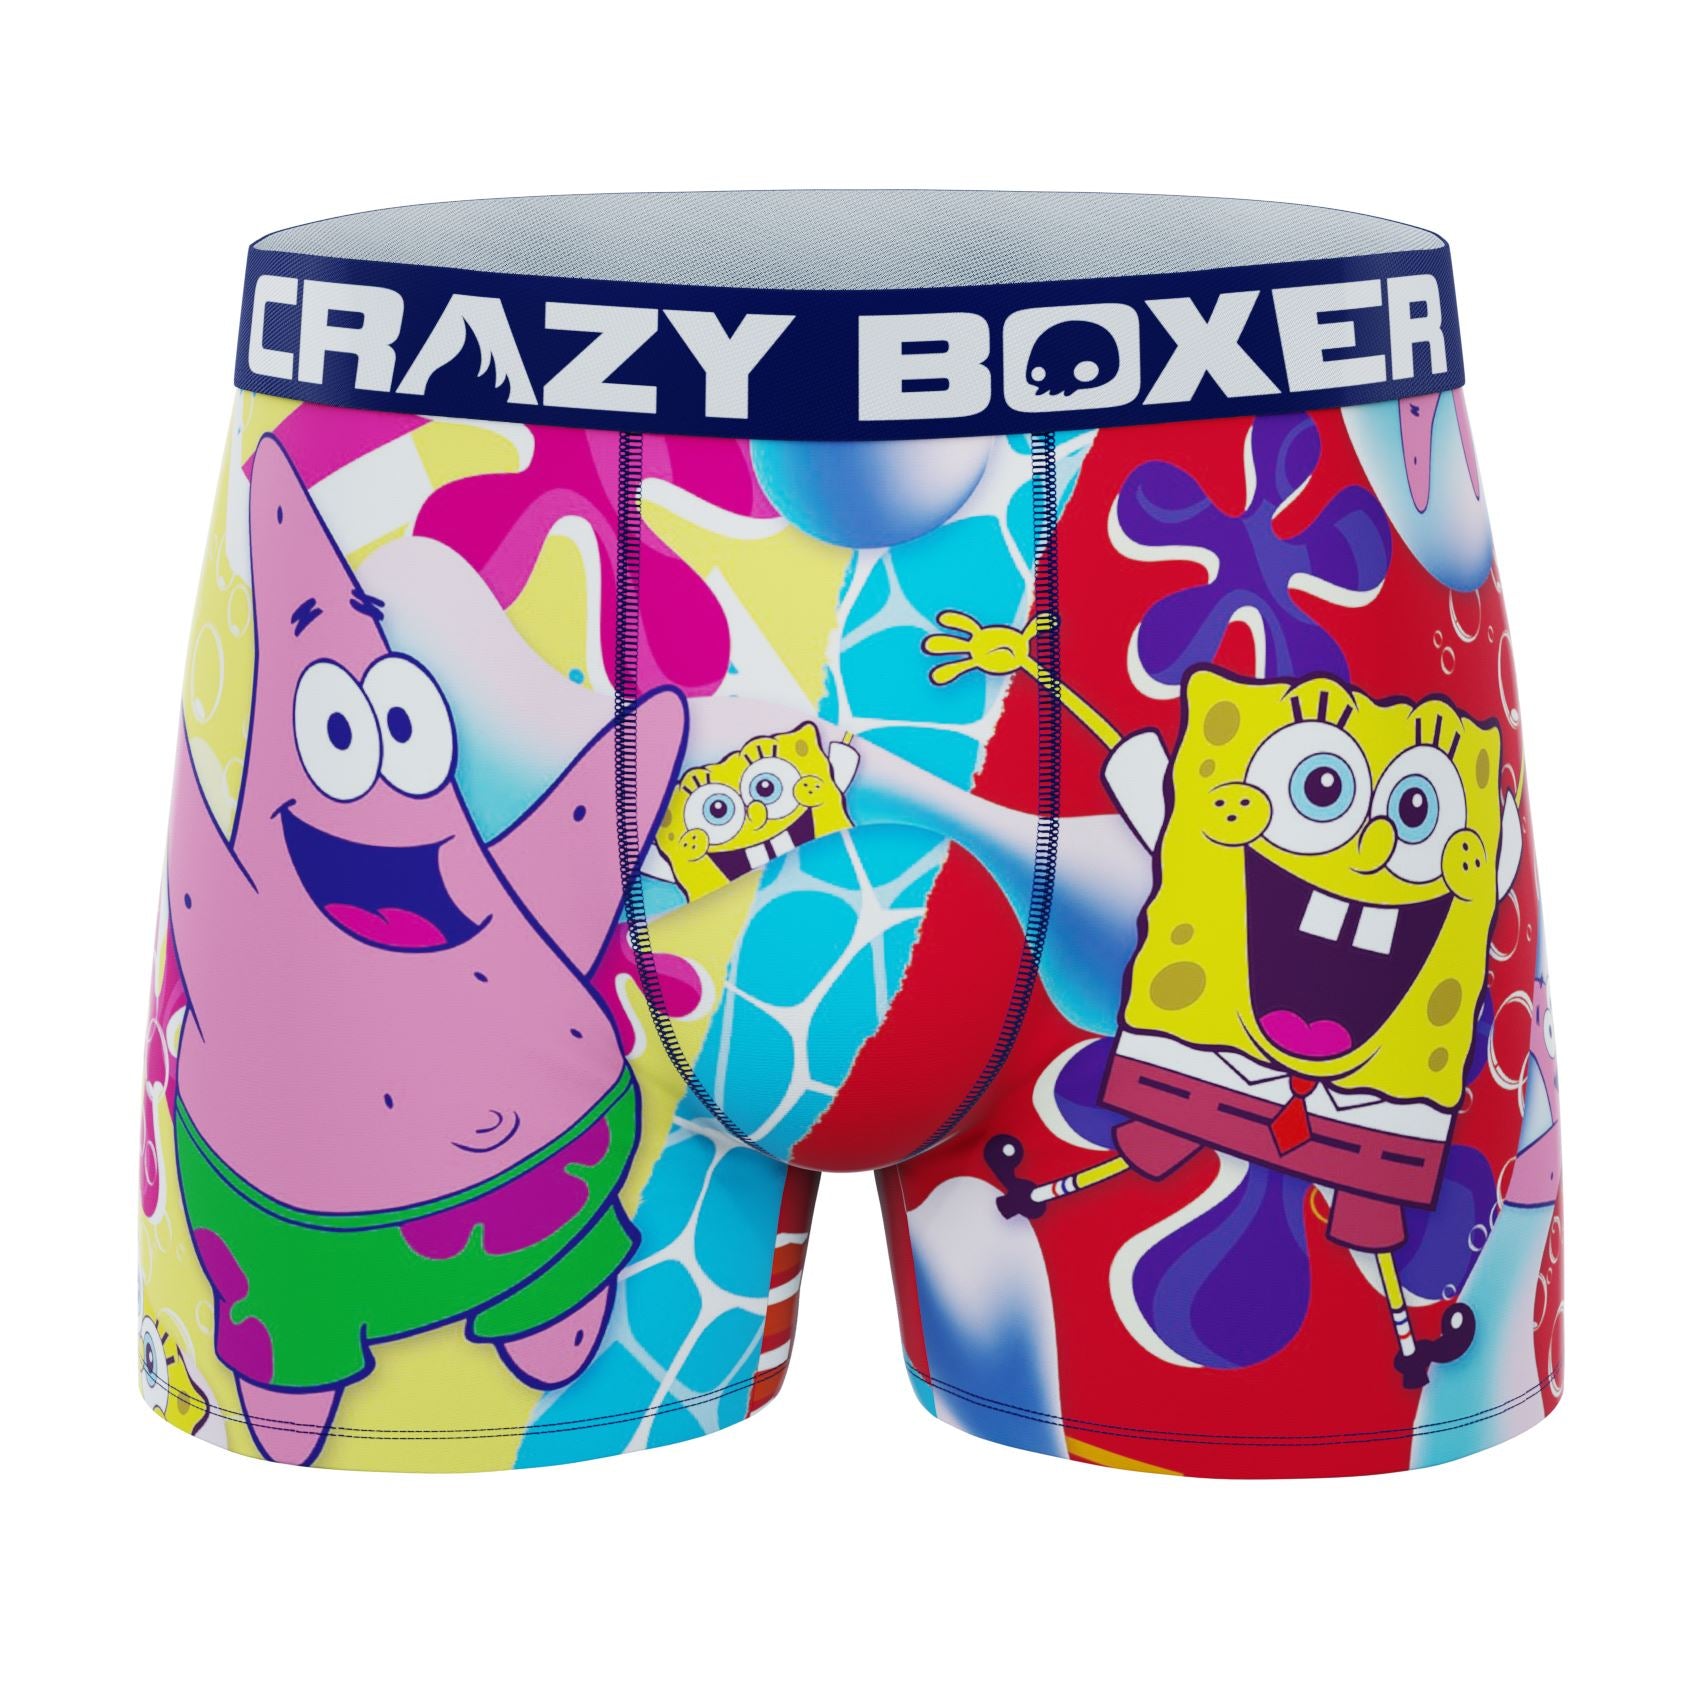 Buy Crazy Boxers SpongeBob SquarePants Patrick Ice Cream Men's